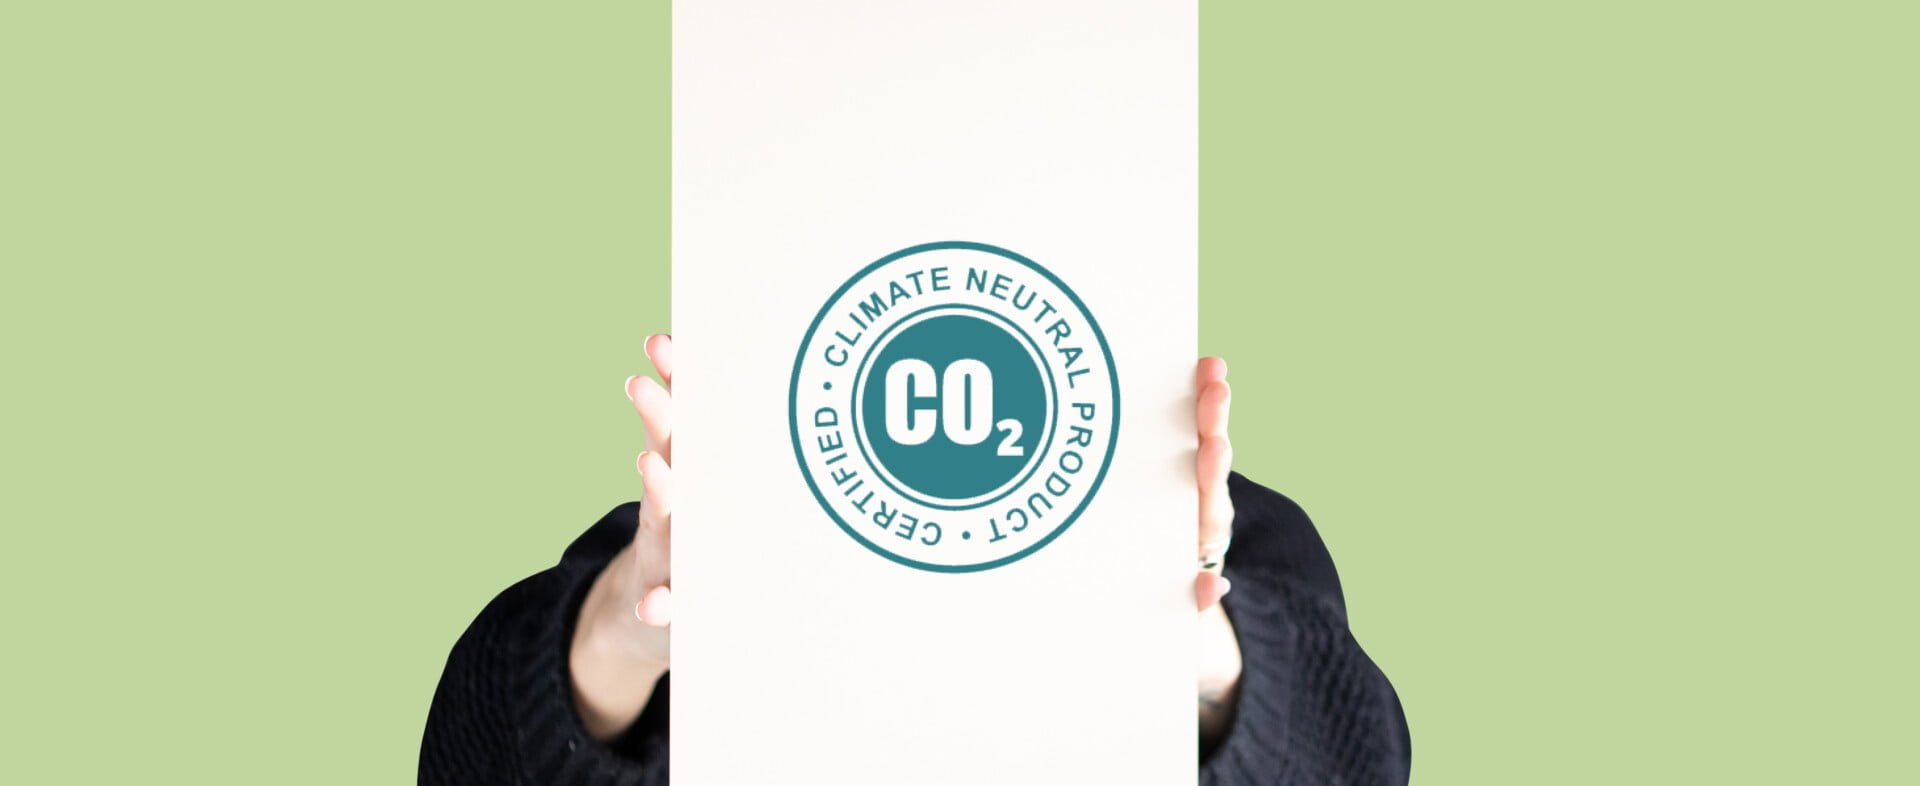 PAPERWISE ES NEUTRAL EN CUANTO AL CO2: ¿QUÉ PASA CON ESO?